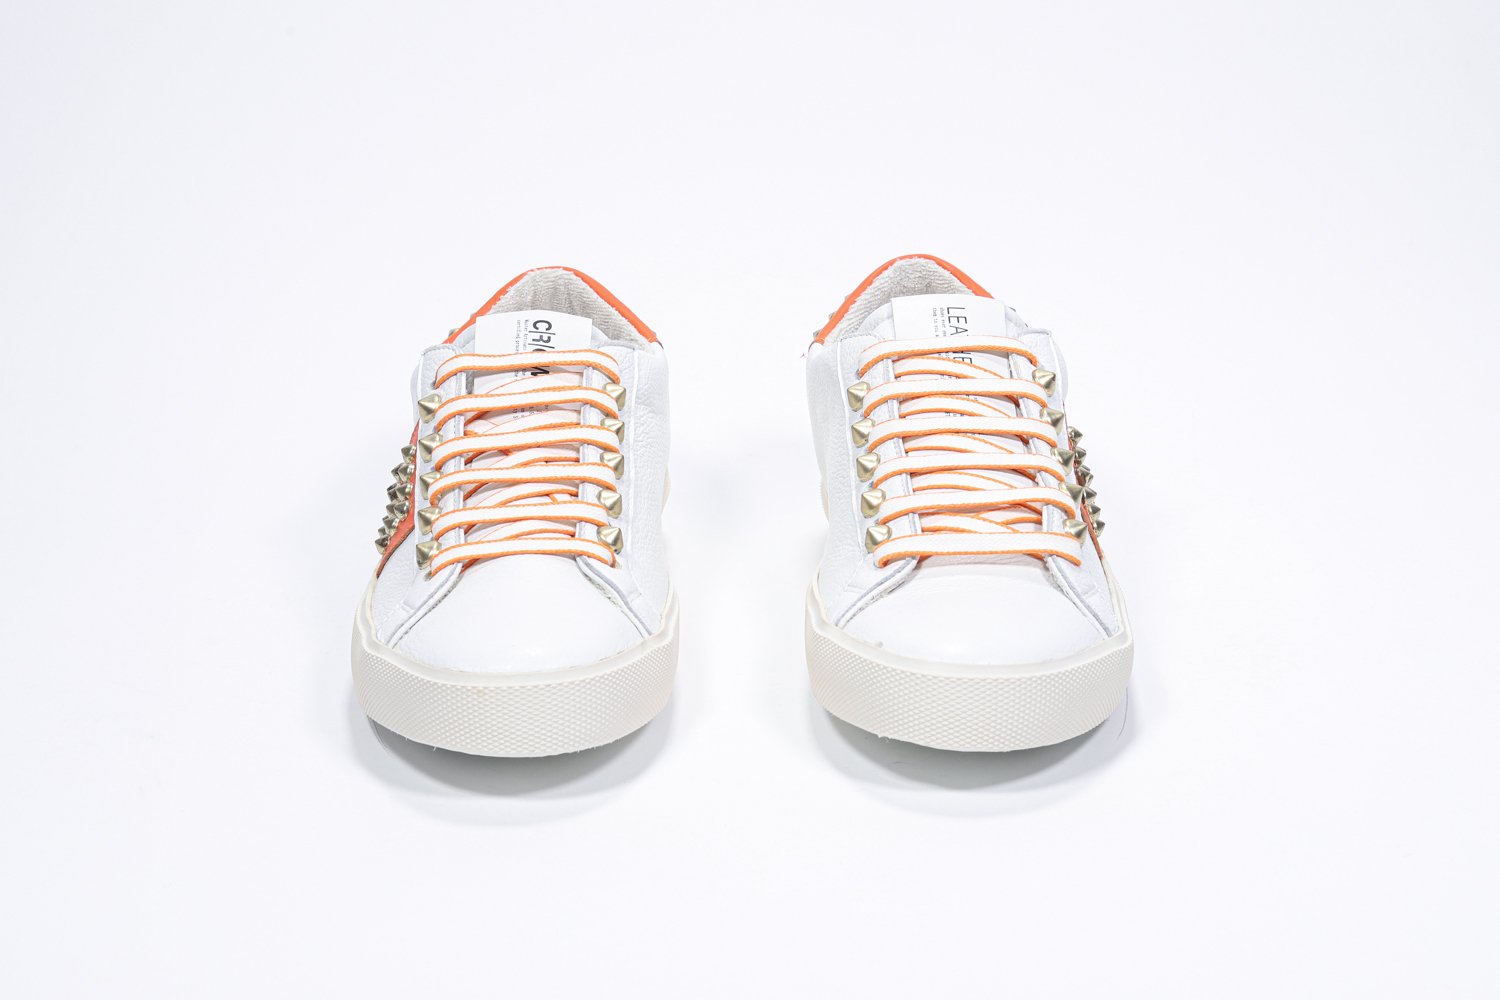 Vorderansicht des weißen und orangenen Low Top sneaker. Obermaterial aus Vollleder mit Nieten und Vintage-Gummisohle.